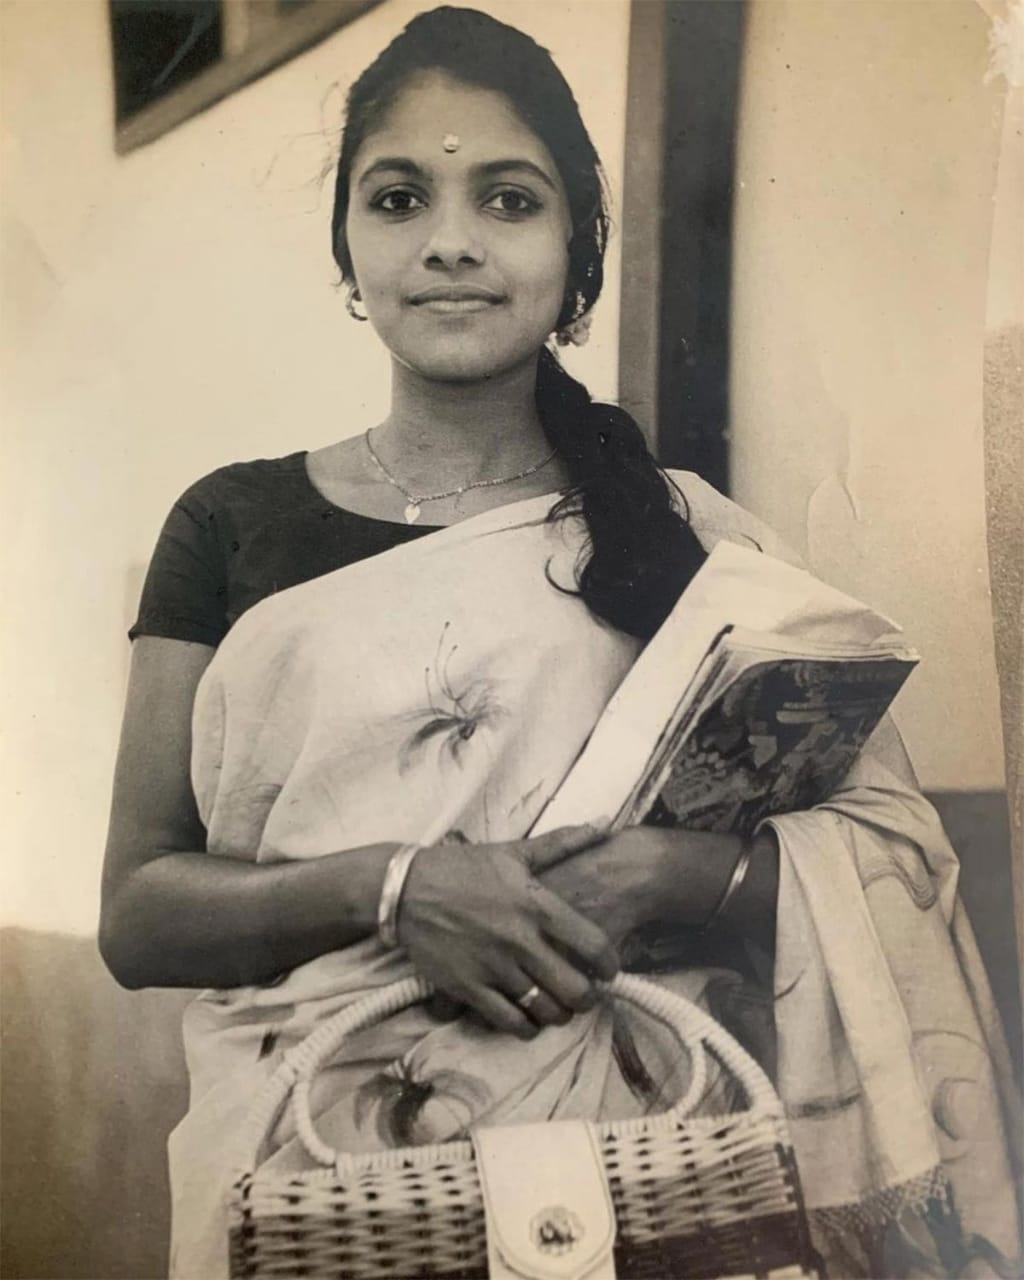 Tamil actress